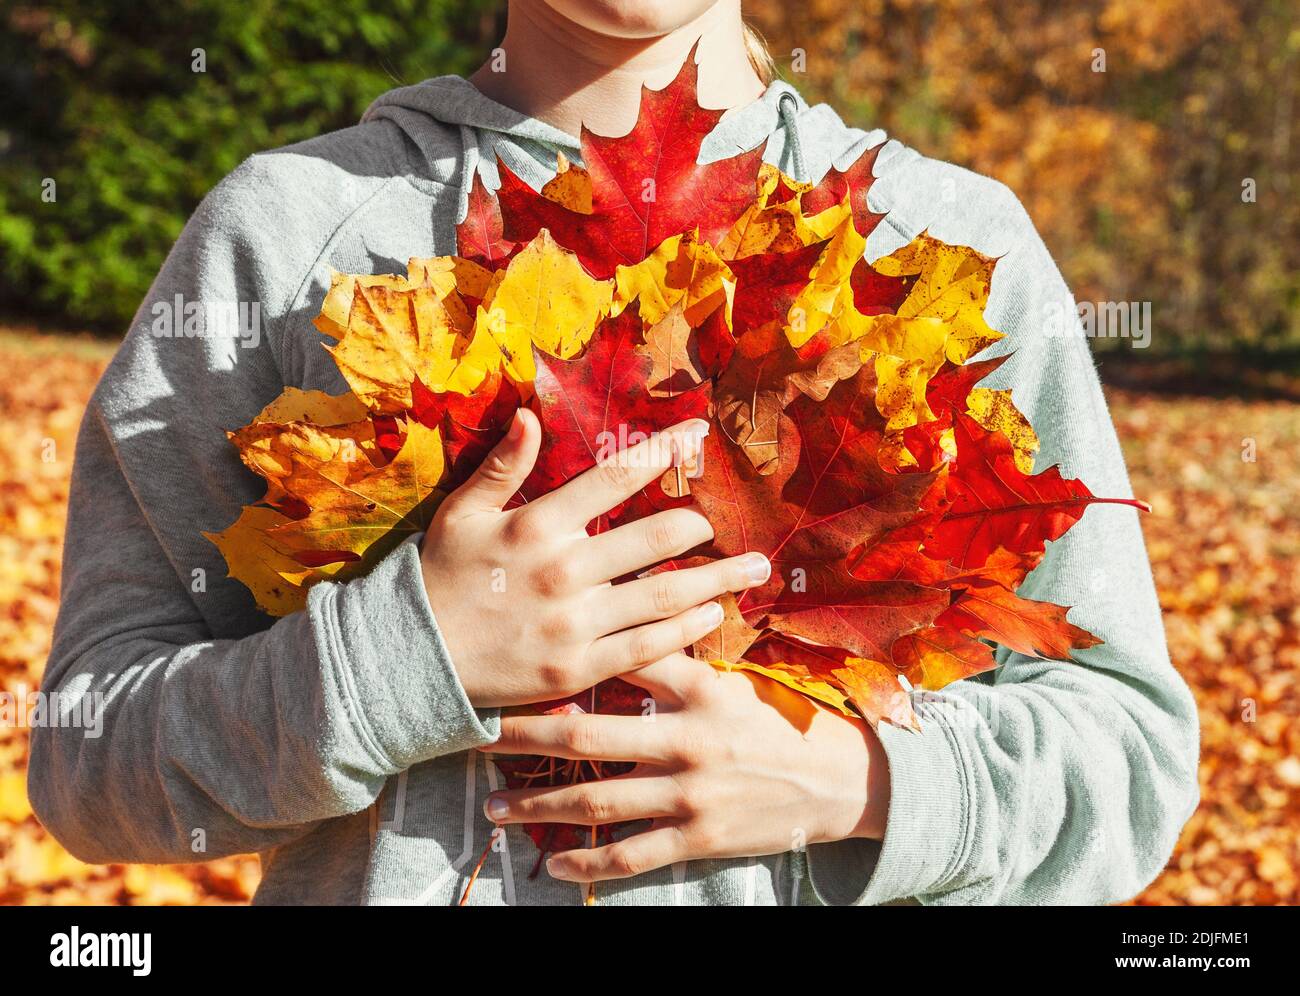 Giovane ragazza adolescente tenendo un mucchio di giallo e rosso di foglie di acero nelle sue mani in una luminosa giornata di sole in autunno park, vista frontale, non faccia visibile Foto Stock